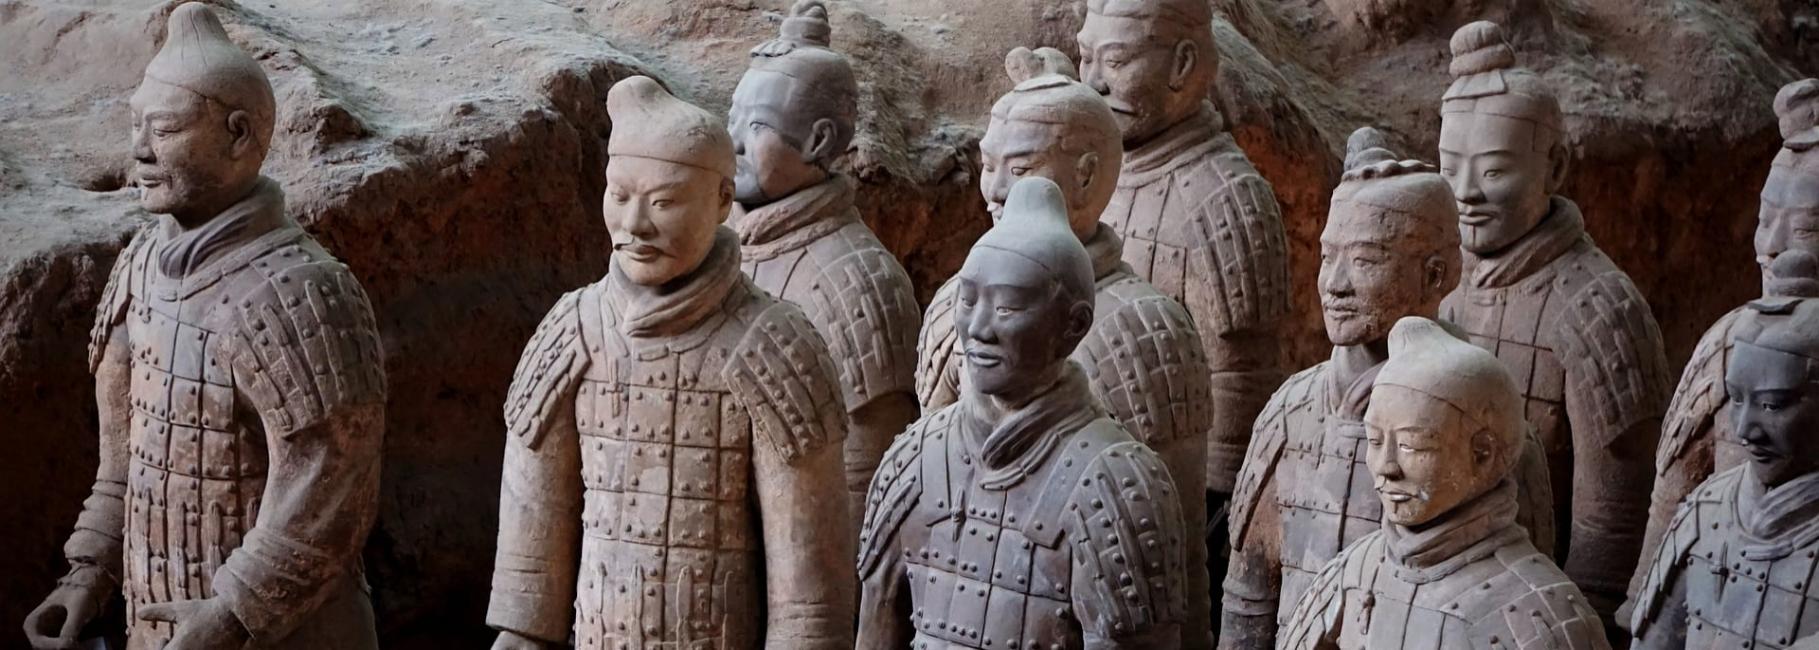 china history trip header slk fe